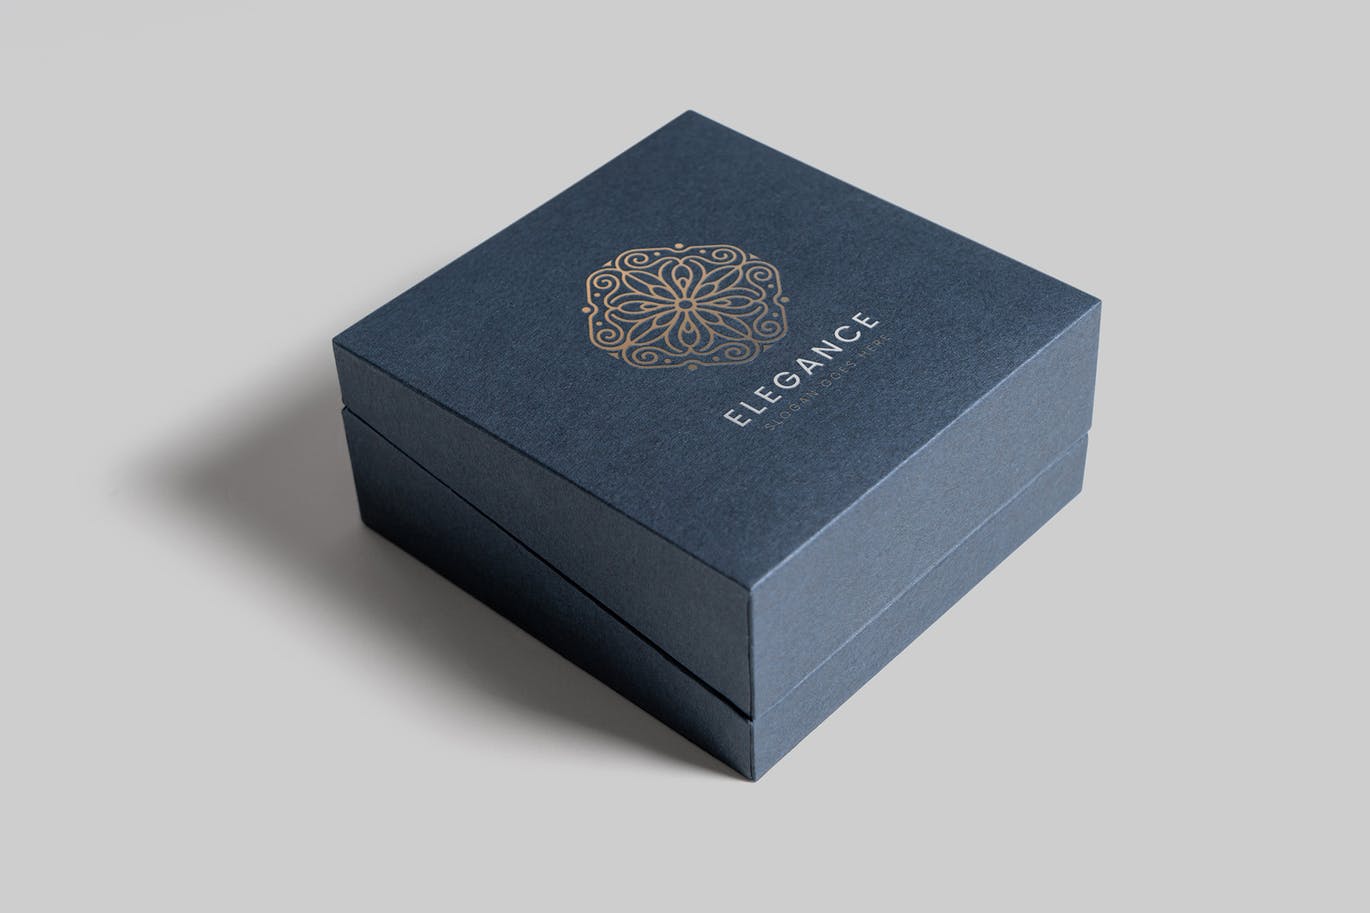 珠宝包装盒设计图素材中国精选模板 Jewelry Packaging Box Mockups插图(9)